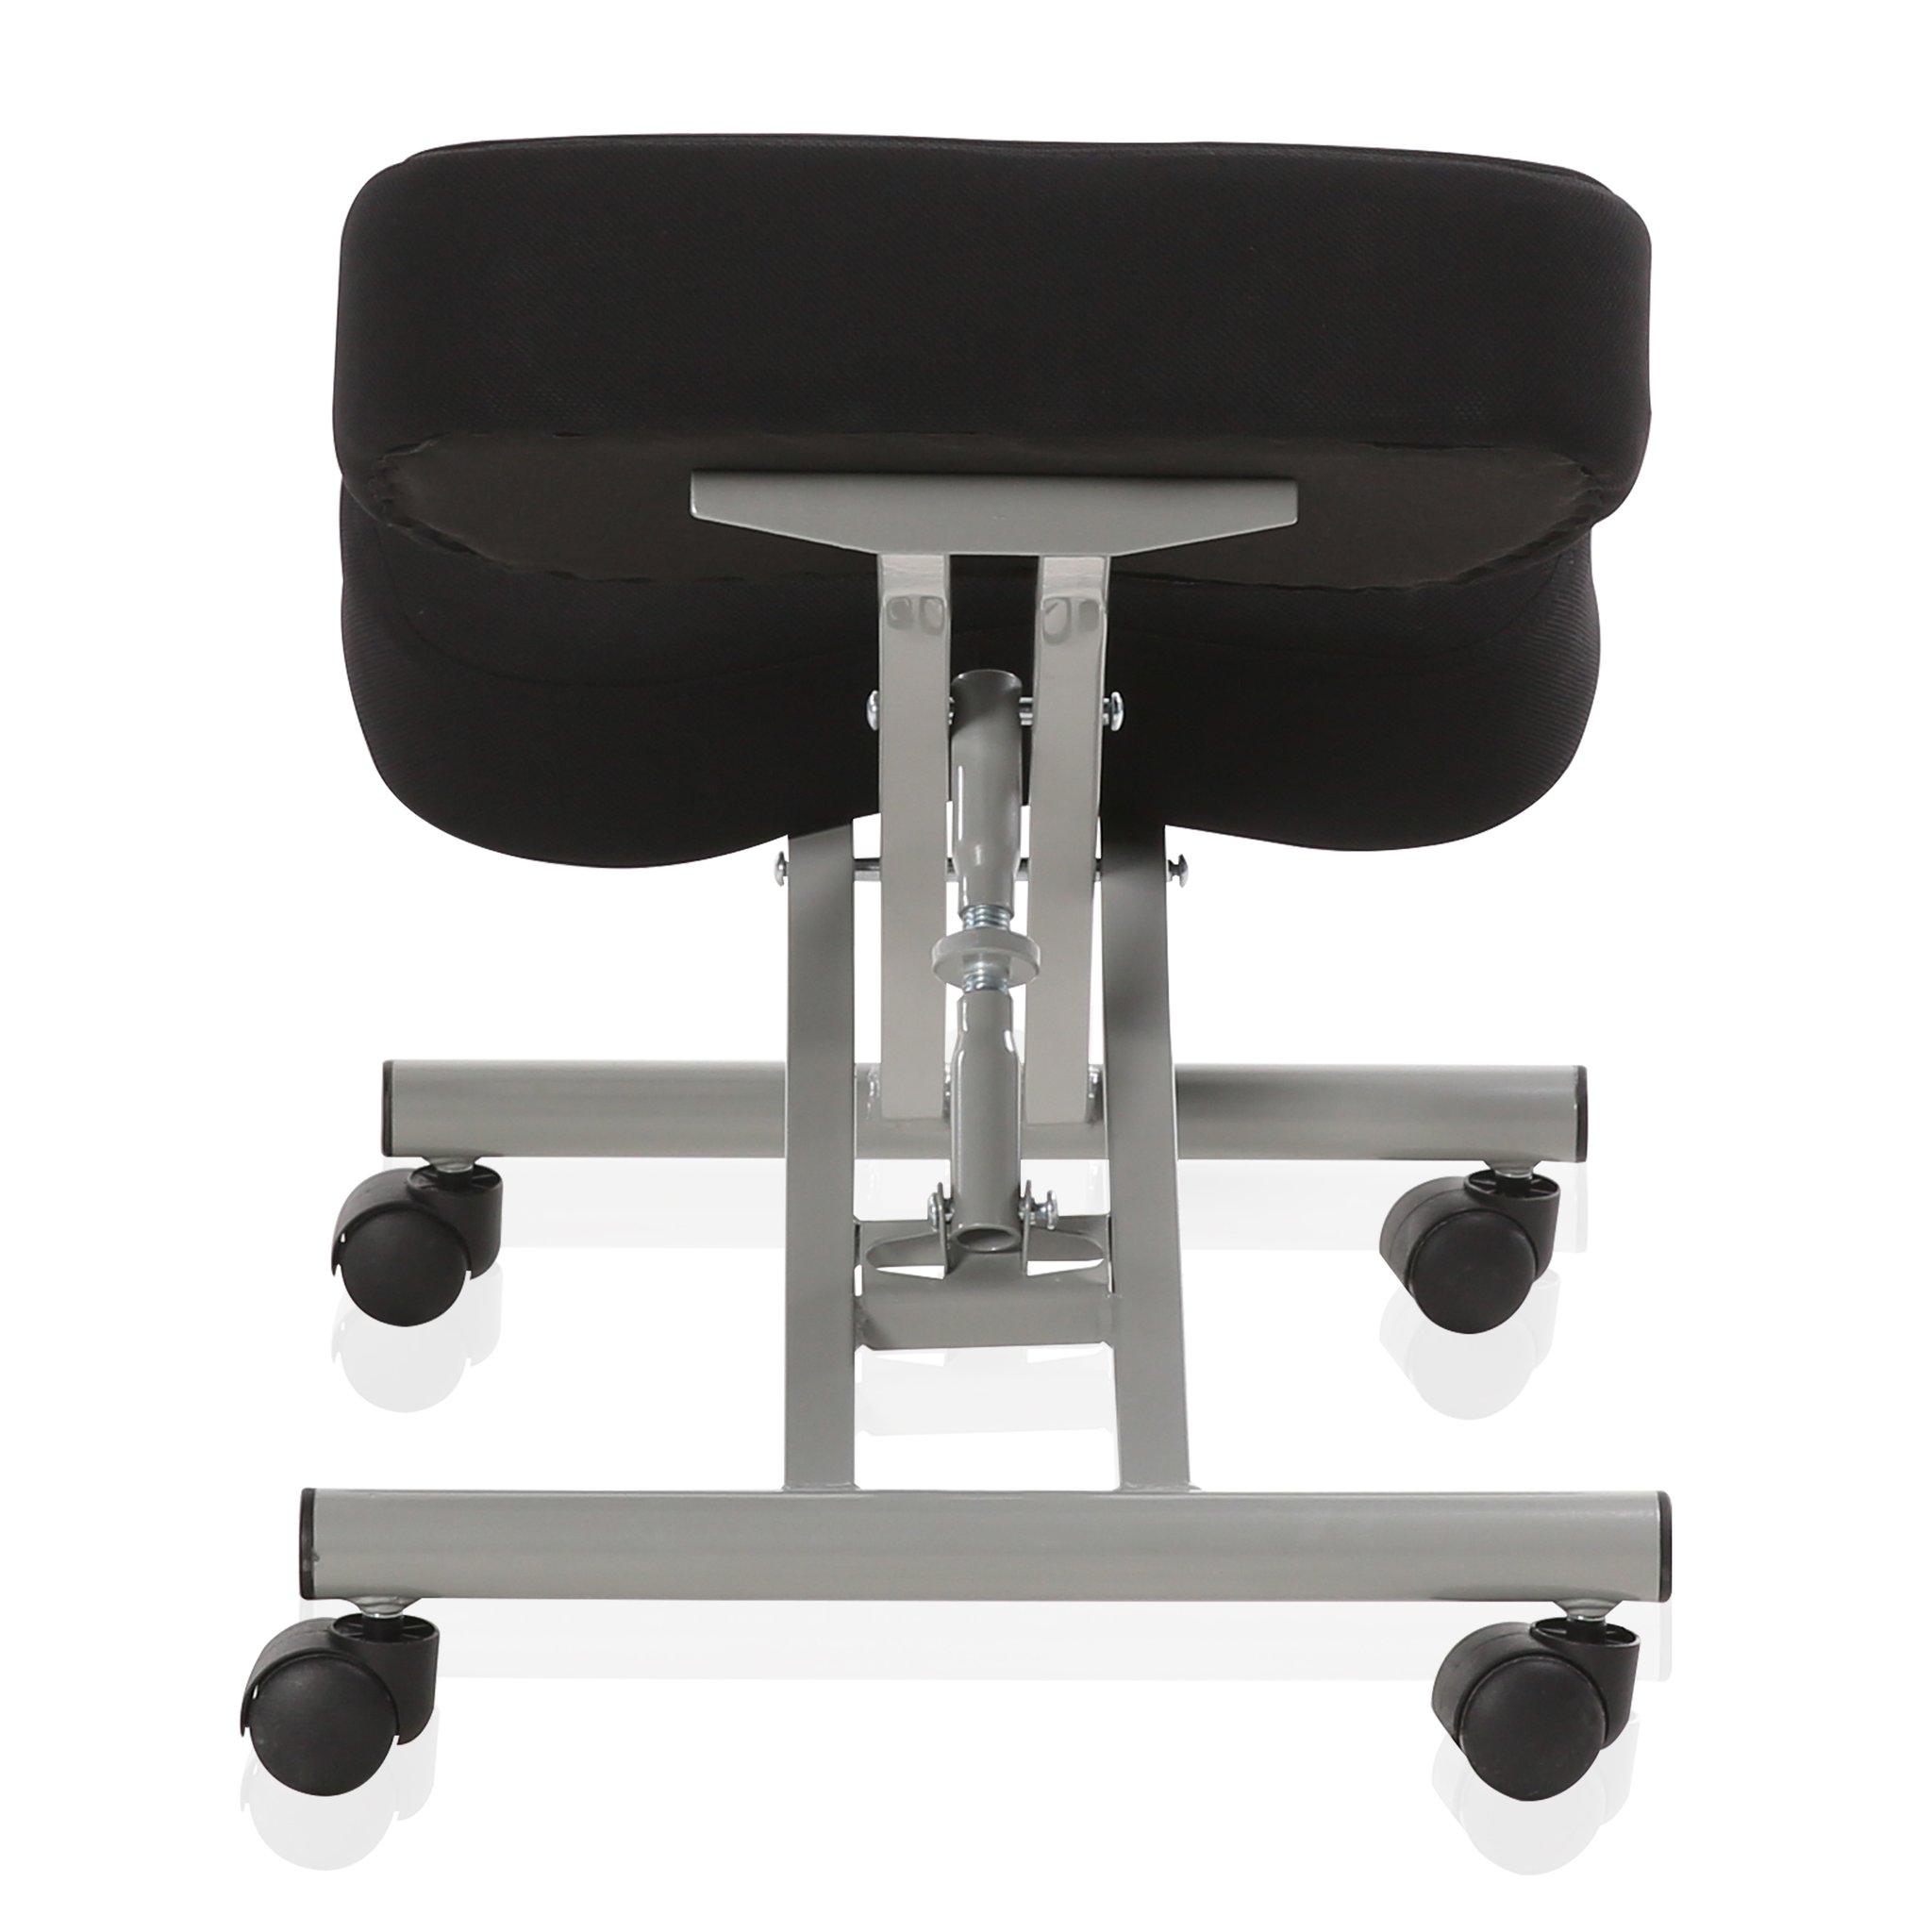 Ergonomic Orthopaedic Posture Steel Adjustable Kneeling Stool Chair